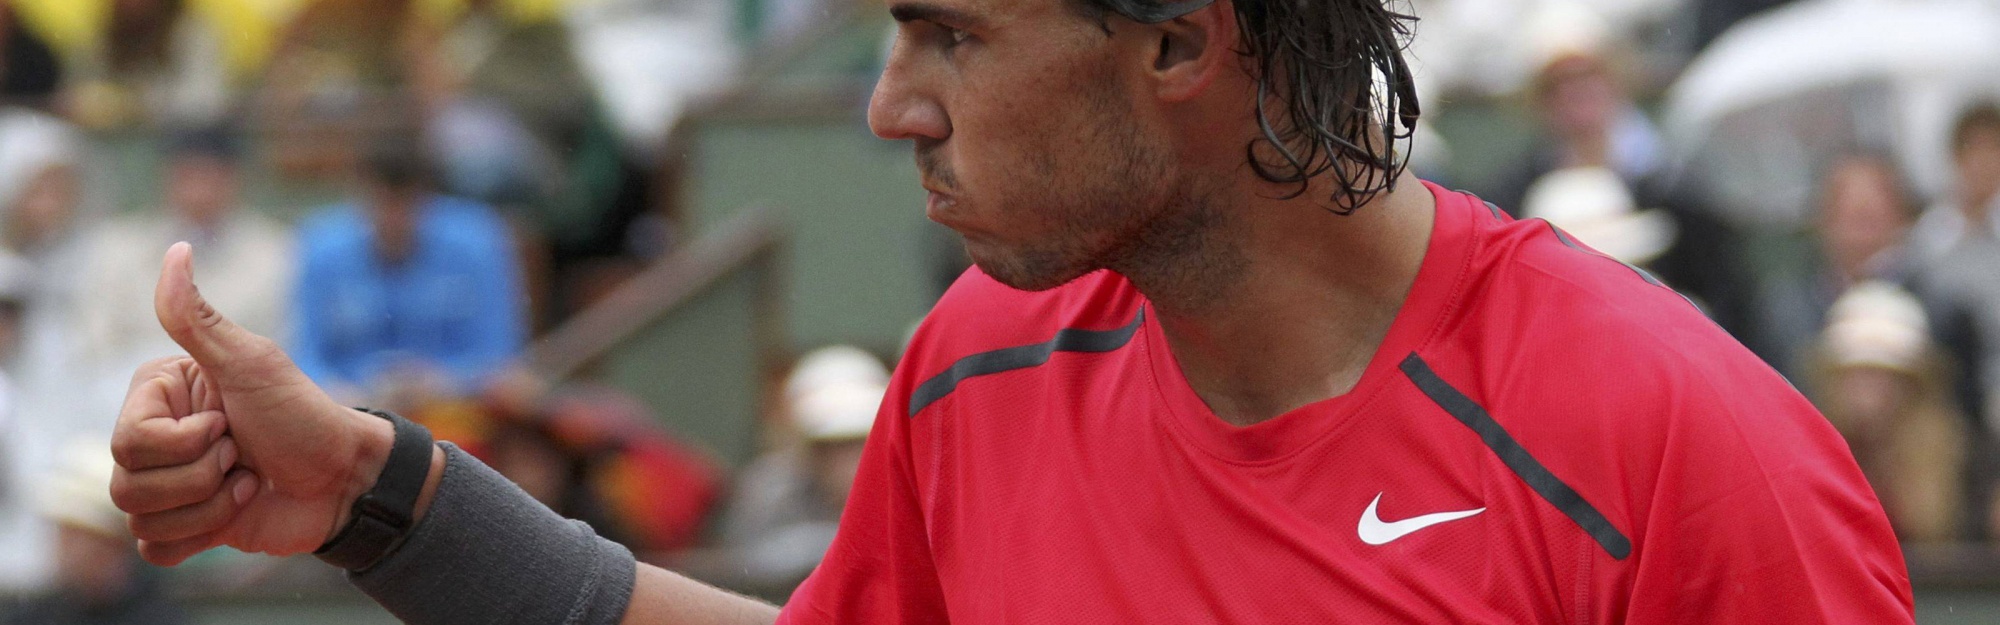 Rafael Nadal Gives Thumbs Up